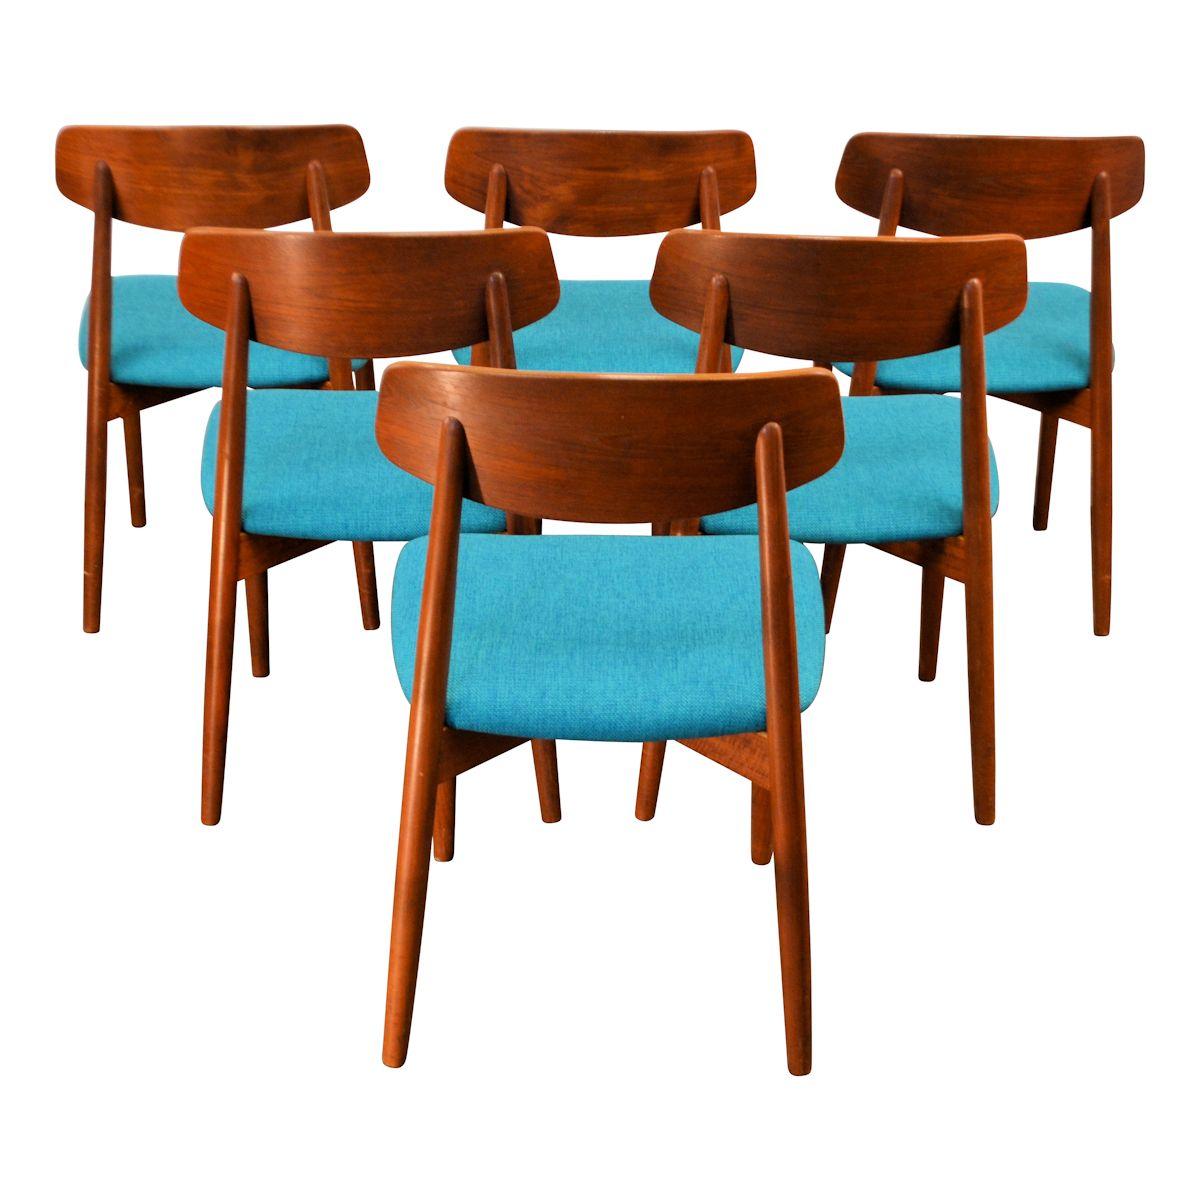 Mid-20th Century Vintage Harry Østergaard Teak Dining Chairs